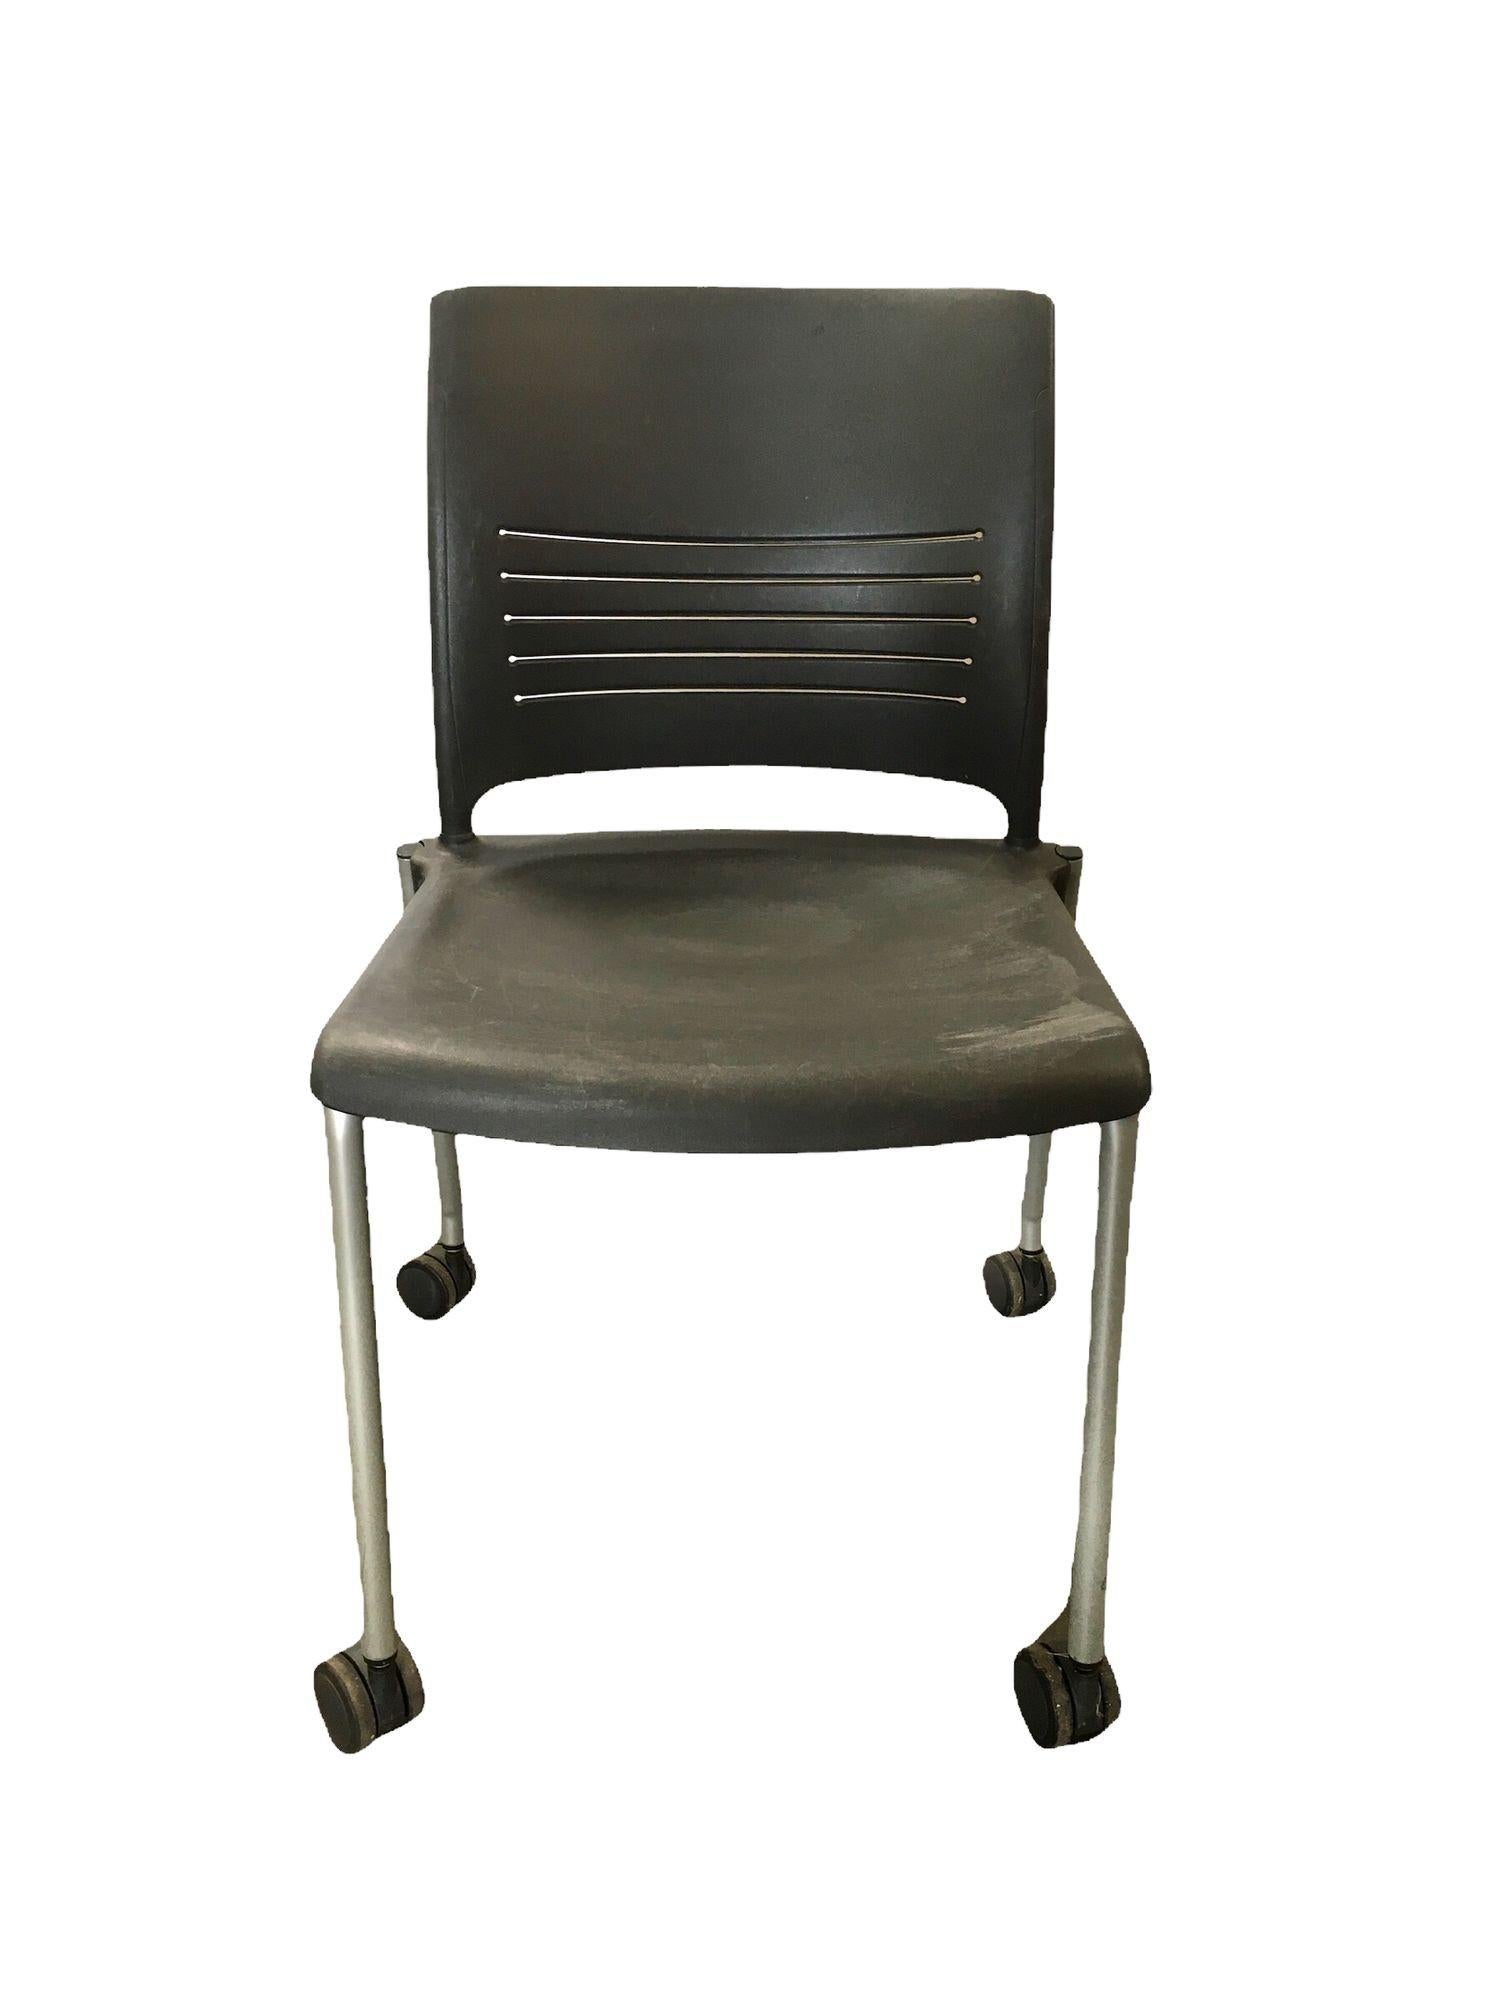 Dunkelgraue Kunststoff-Rollstühle für den Schreibtisch von Giancarlo Piretti für Strive. Diese Kunststoffstühle lassen sich dank der Rollen an der Unterseite leicht bewegen und können als Schreibtischstühle, in Wartezimmern oder sogar als